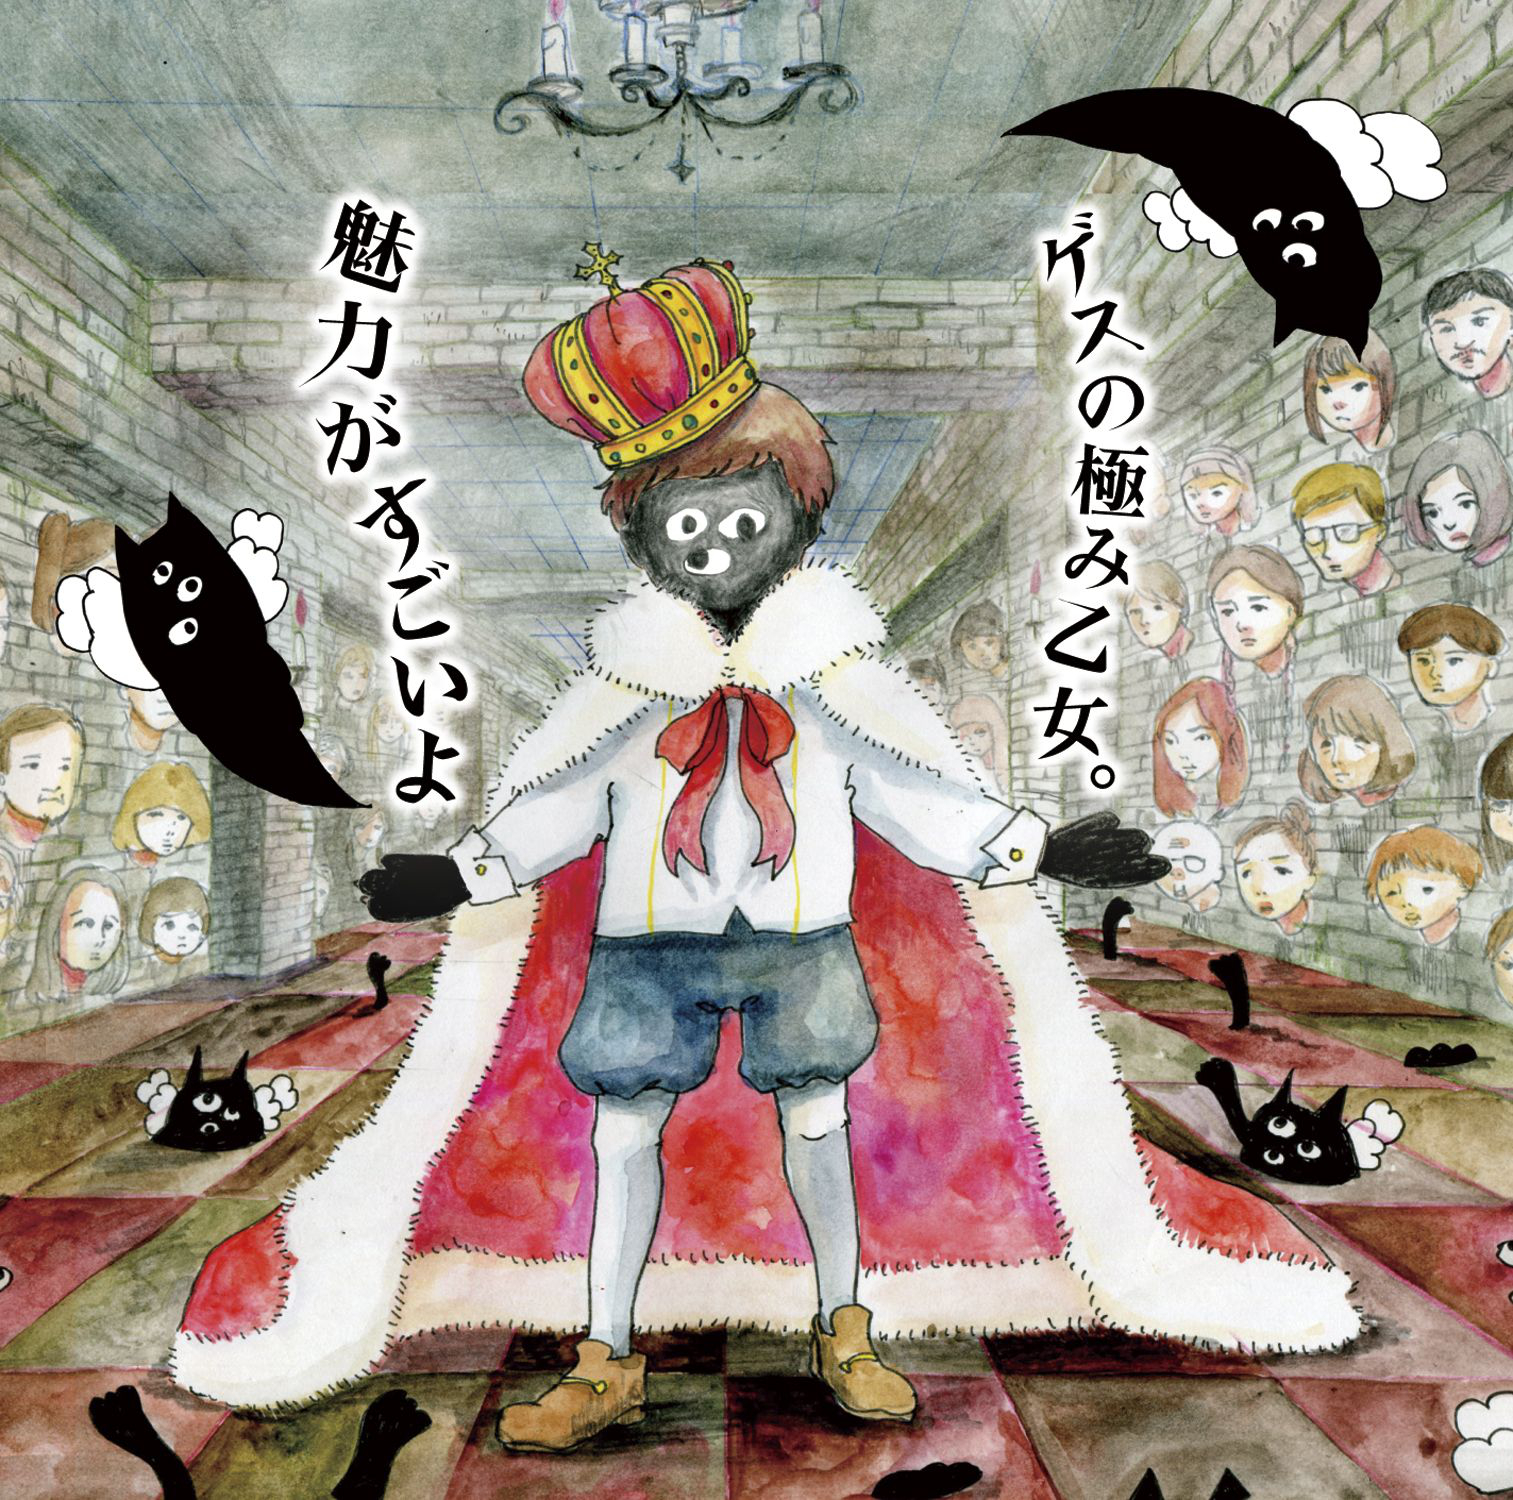 ゲスの極み乙女。メジャー1stアルバム『魅力がすごいよ』(2014年10月29日) 高画質CDジャケット画像